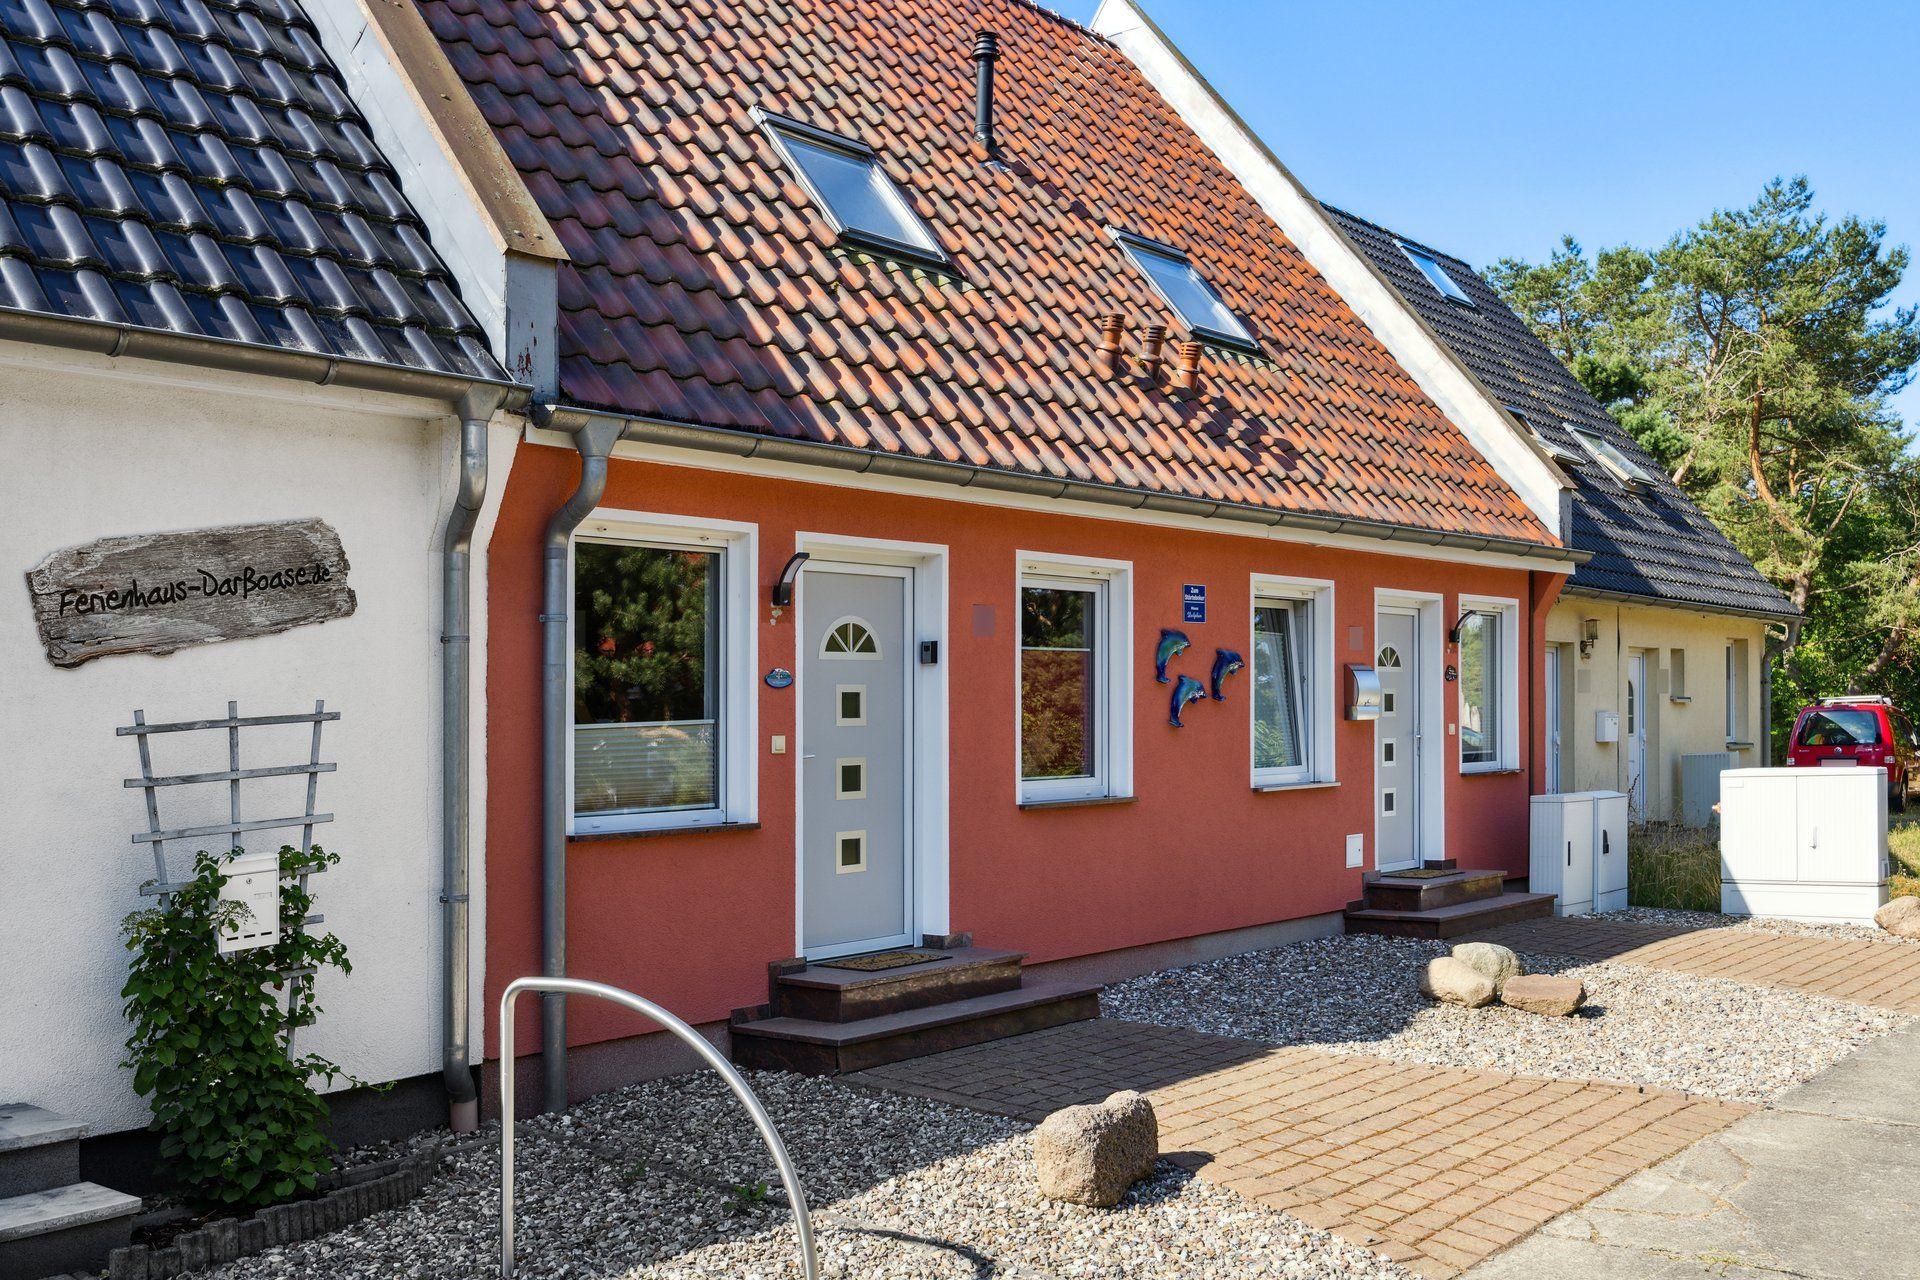 Ferienhaus in Pruchten mit Terrasse, Grill und Gar   Mecklenburger Ostseeküste